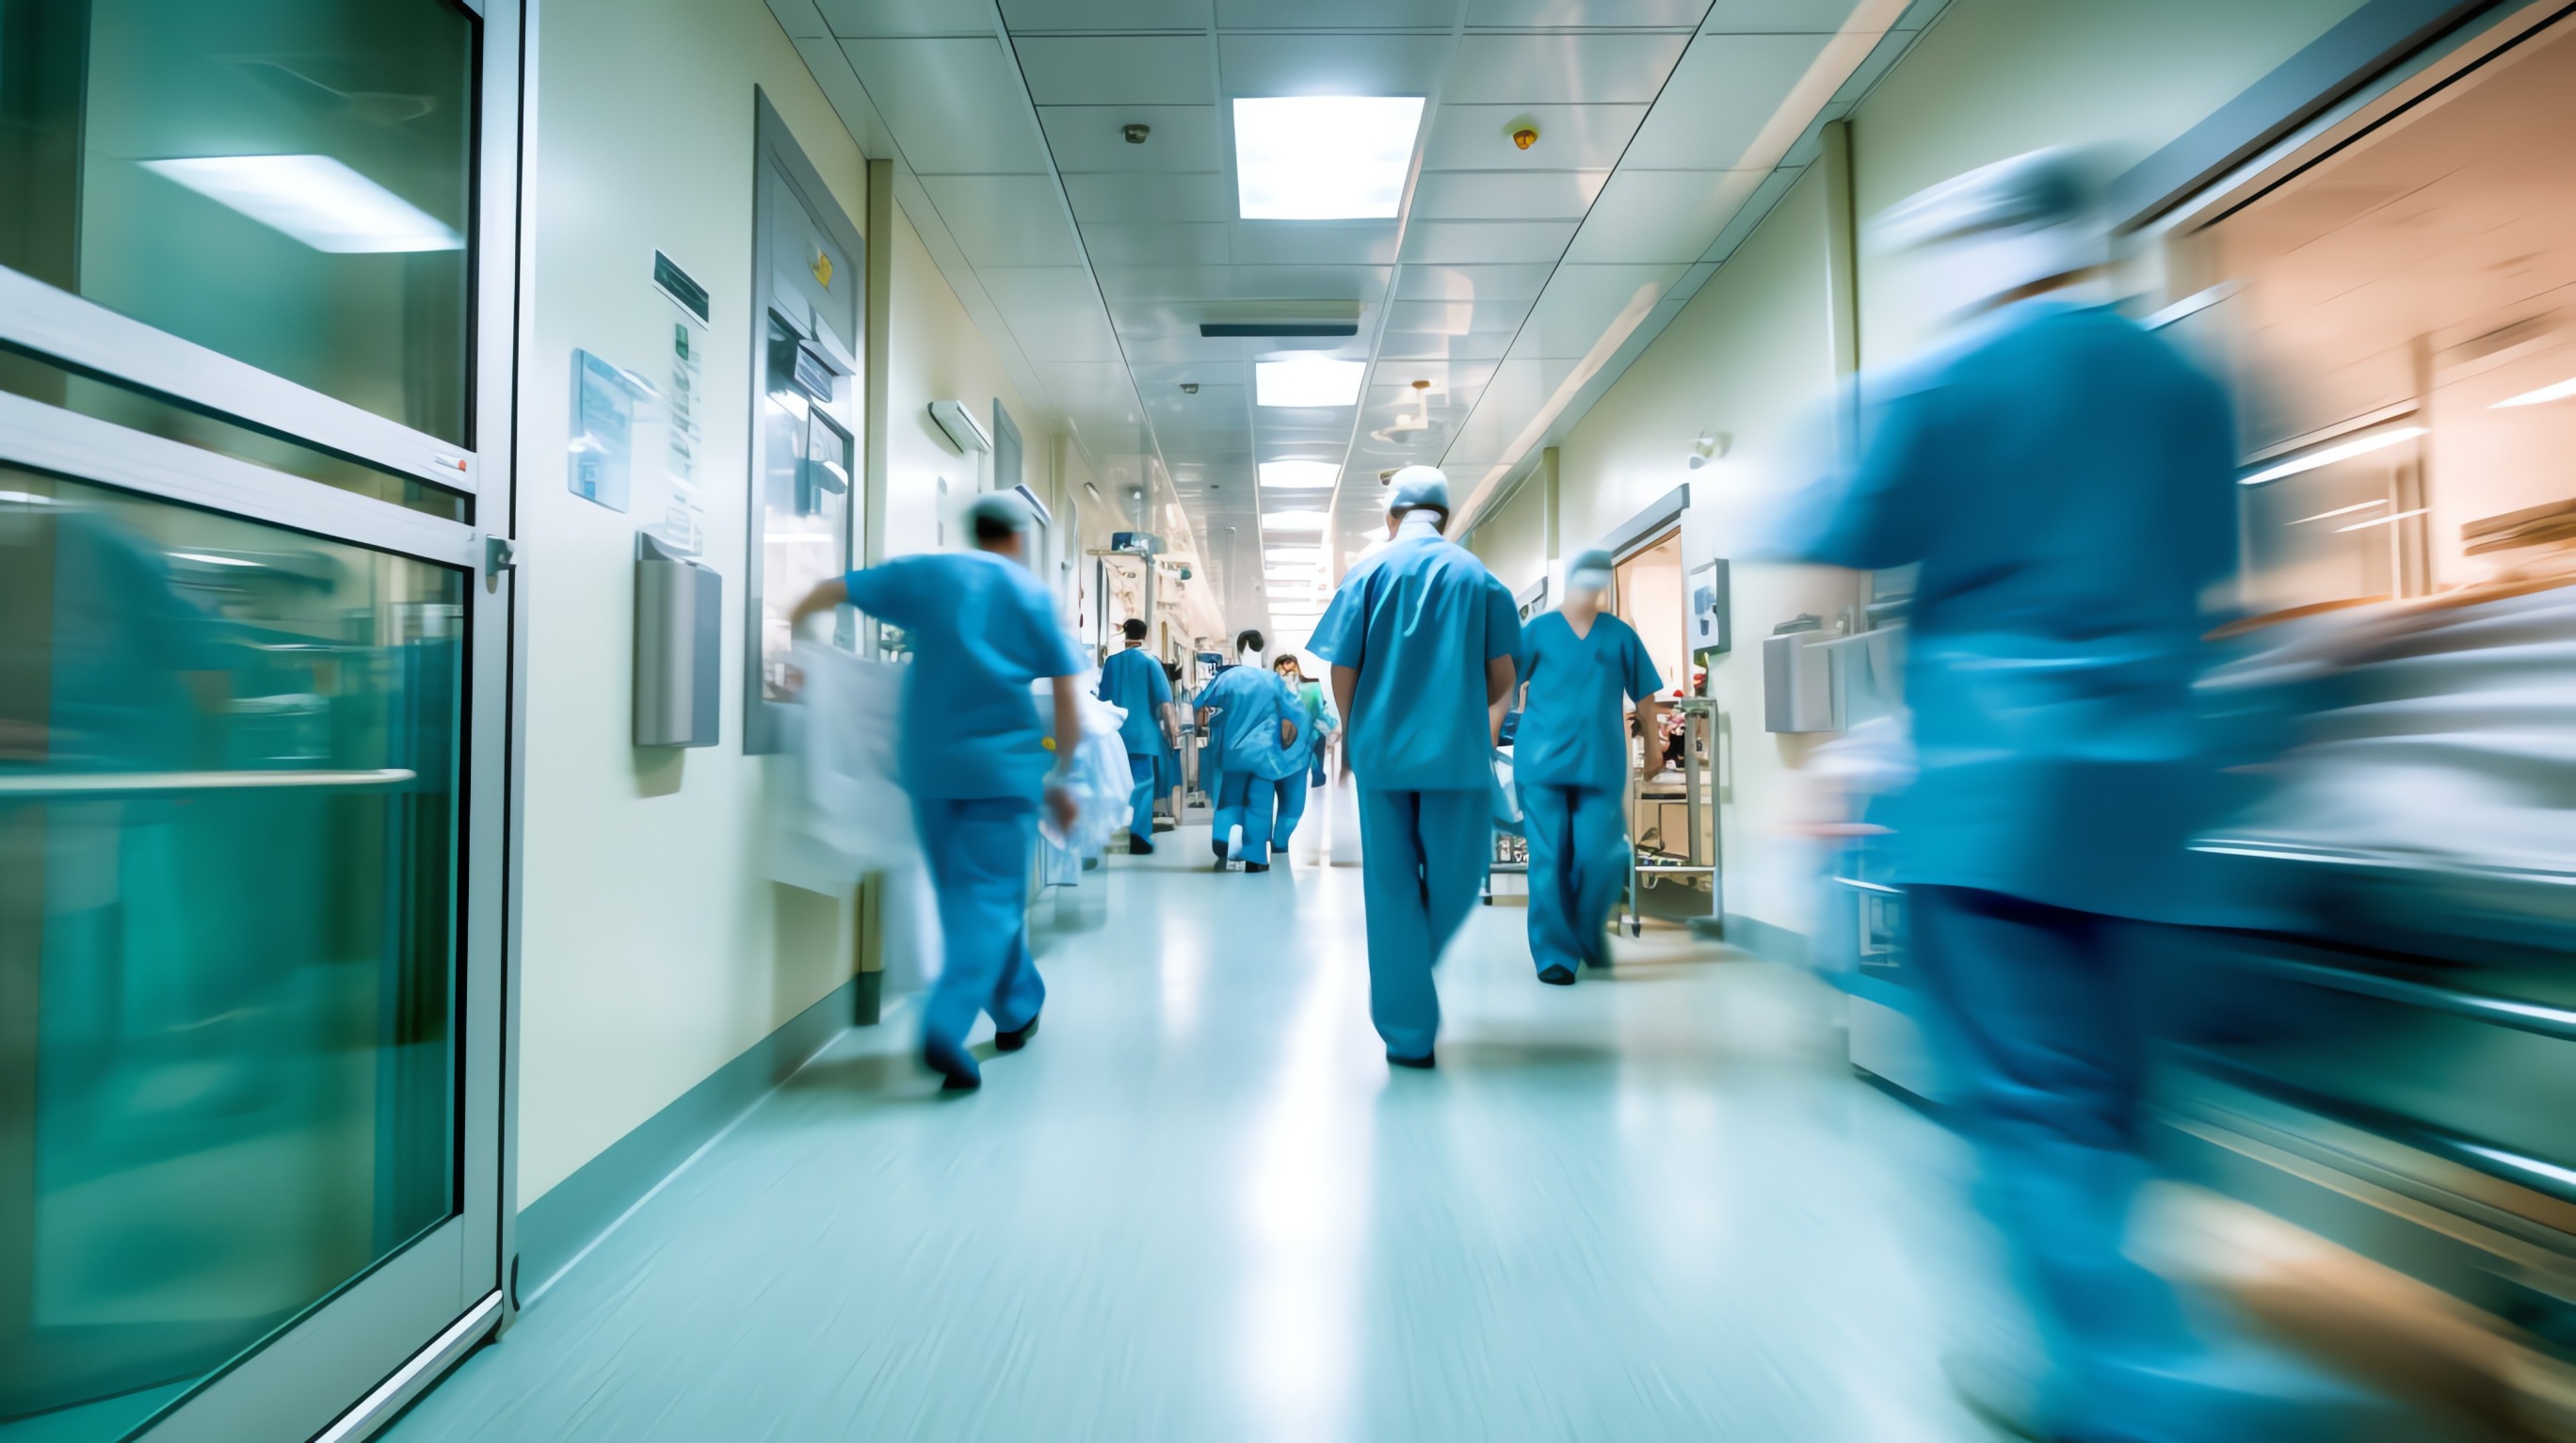 Lekarze ubrani w medyczne stroje biegną szpitalnym korytarzem aby ratować życia swoich pacjentów. /Źródło: 123rf.com